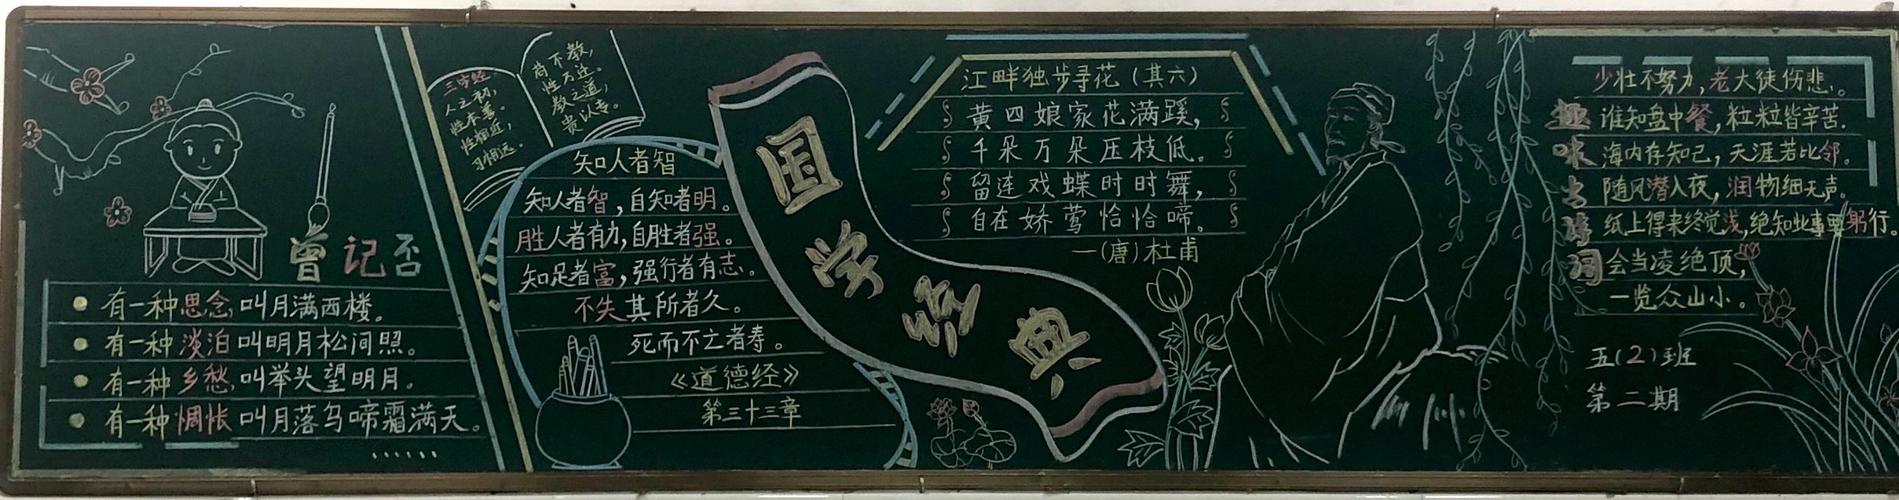 传承中华文化黑板报